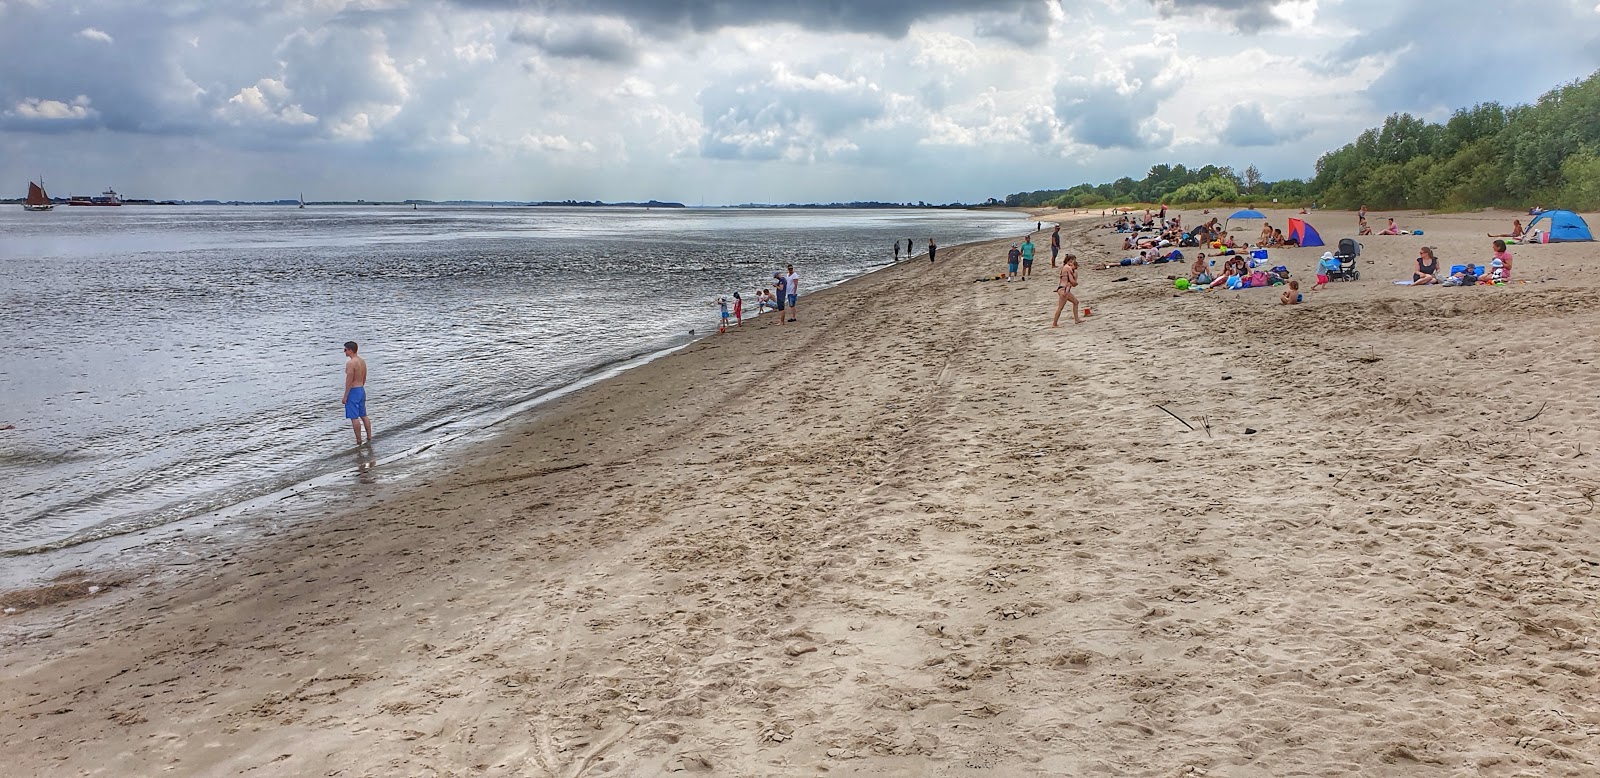 Zdjęcie Krautsand strand z powierzchnią jasny piasek